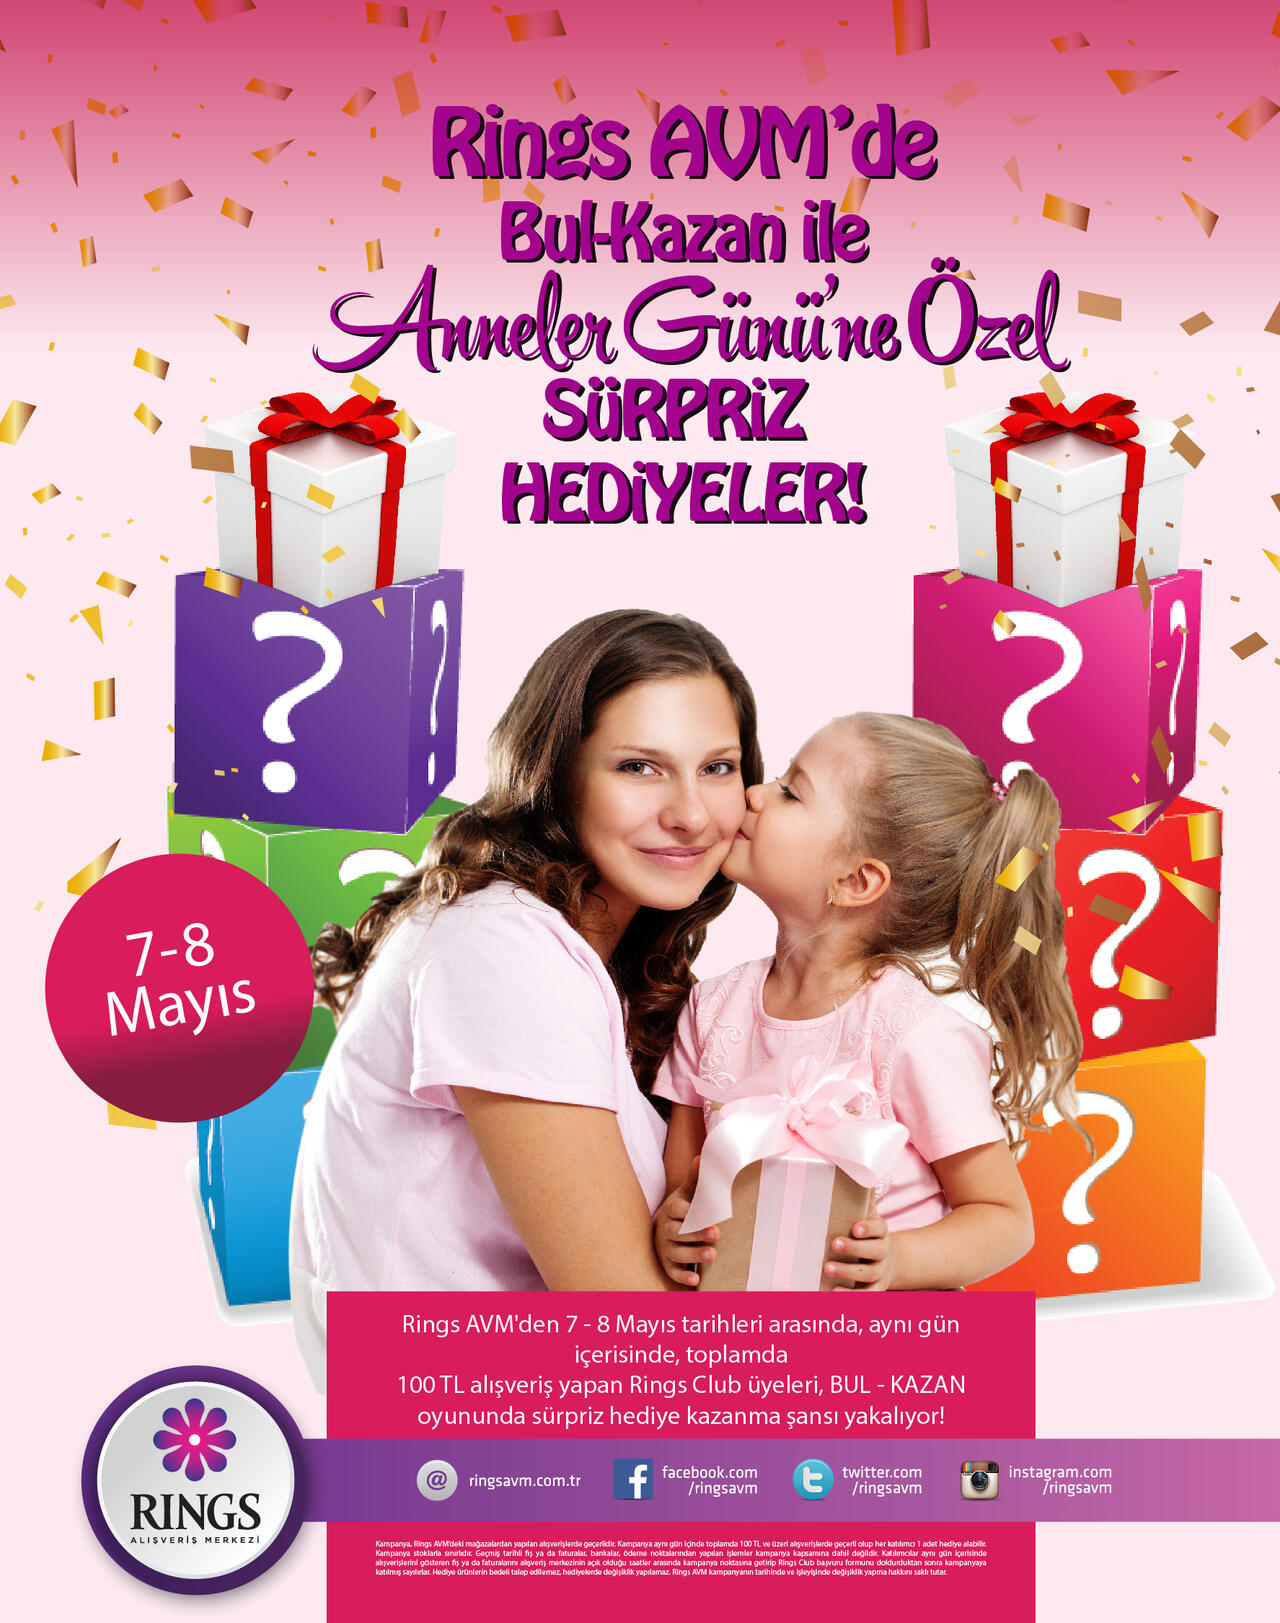 Rings AVM'de Bul Kazan ile Anneler Günü'ne Özel Sürpriz Hediyeler!